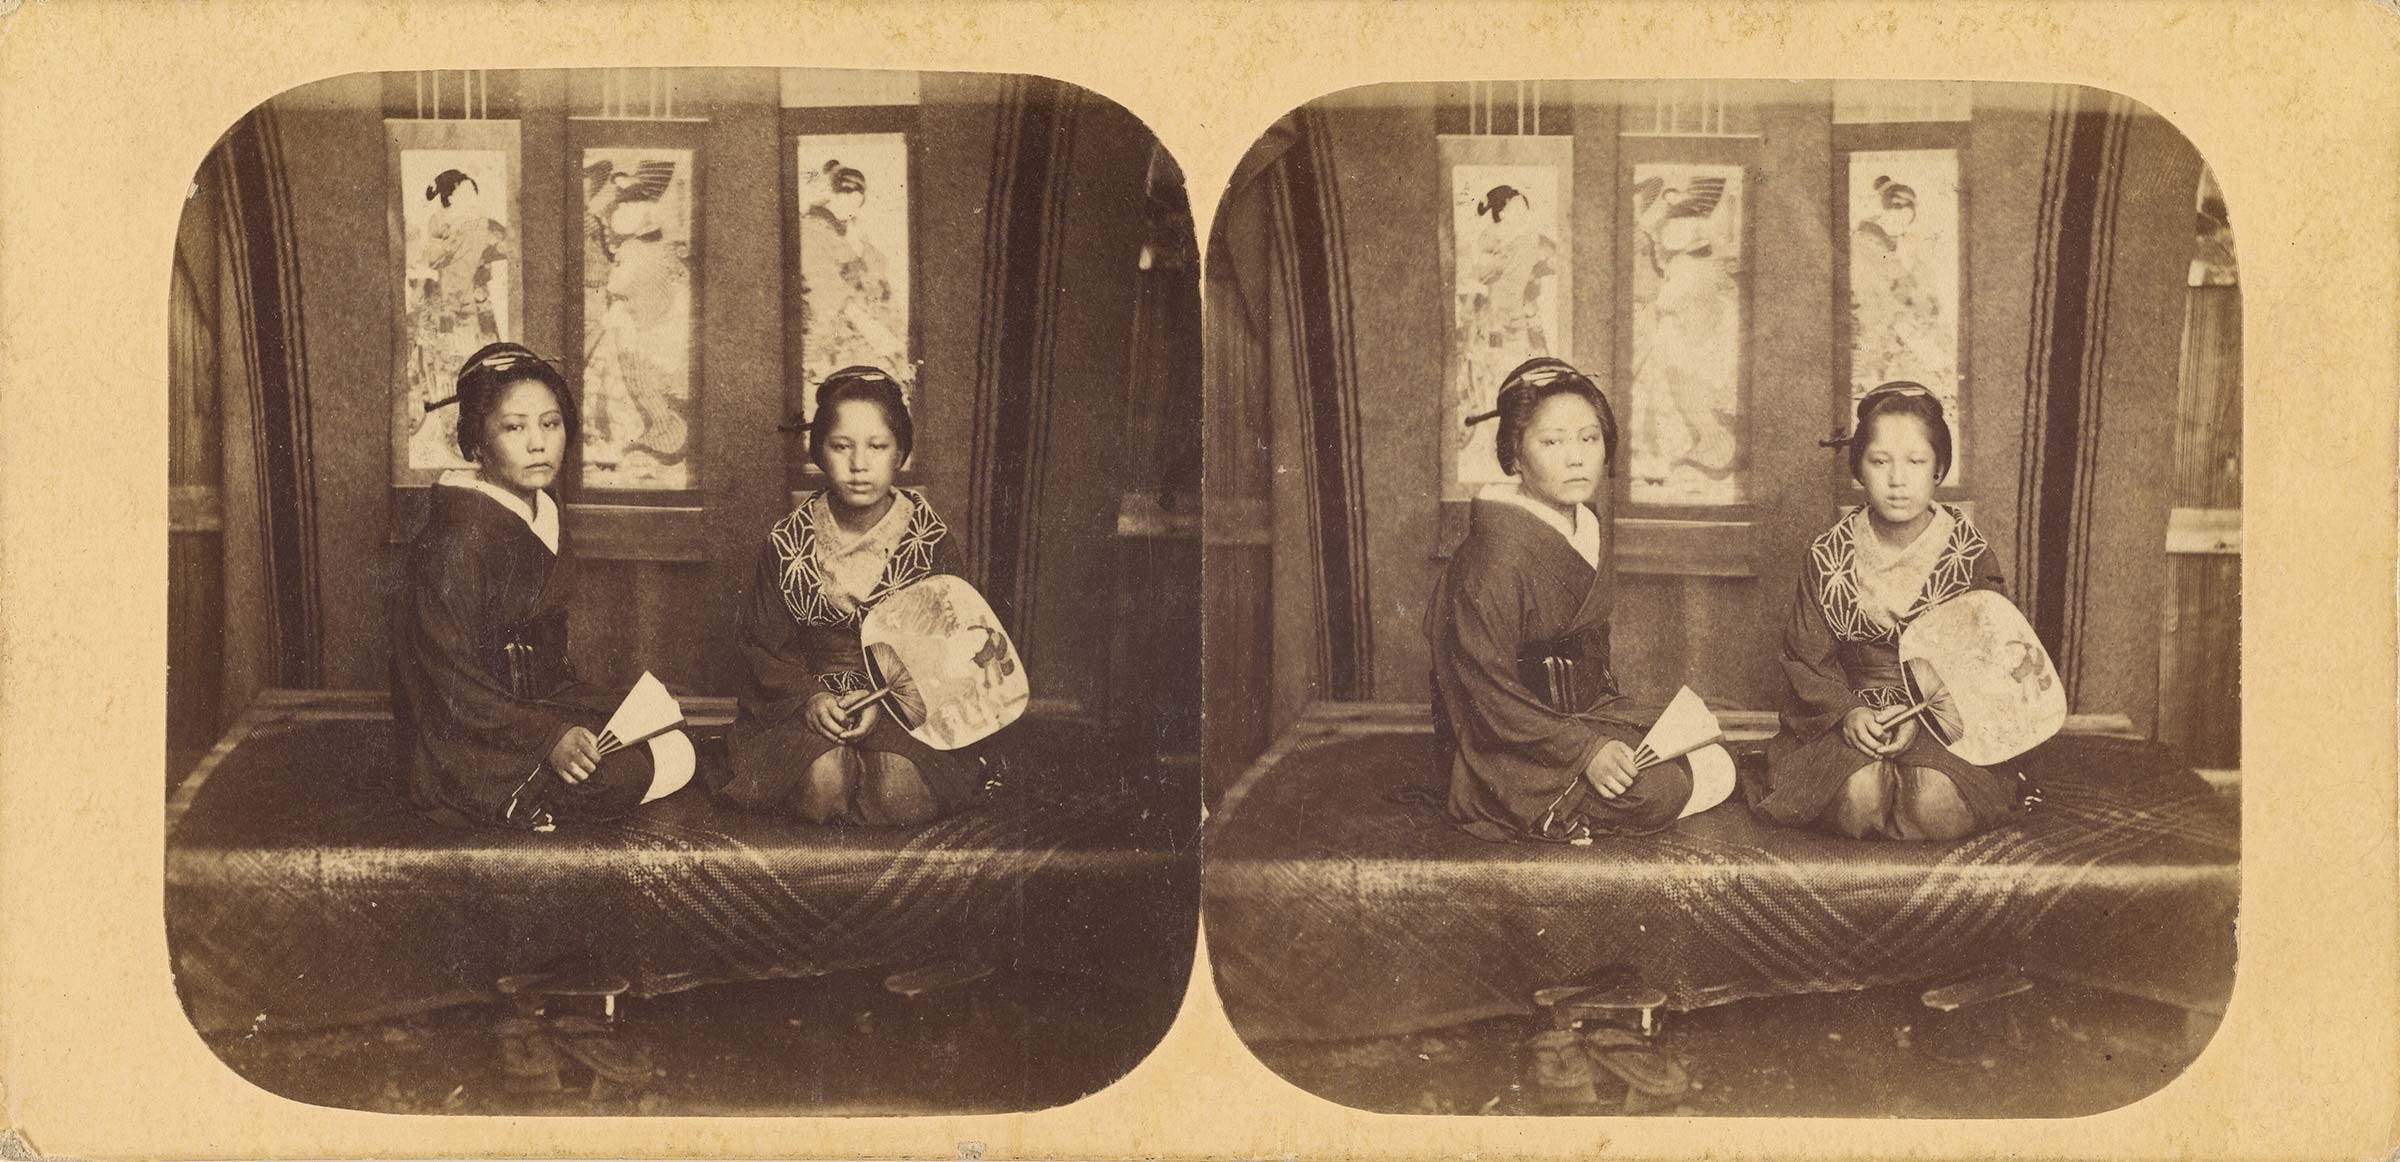 Two Japanese women by Pierre Rossier, ca. 1859